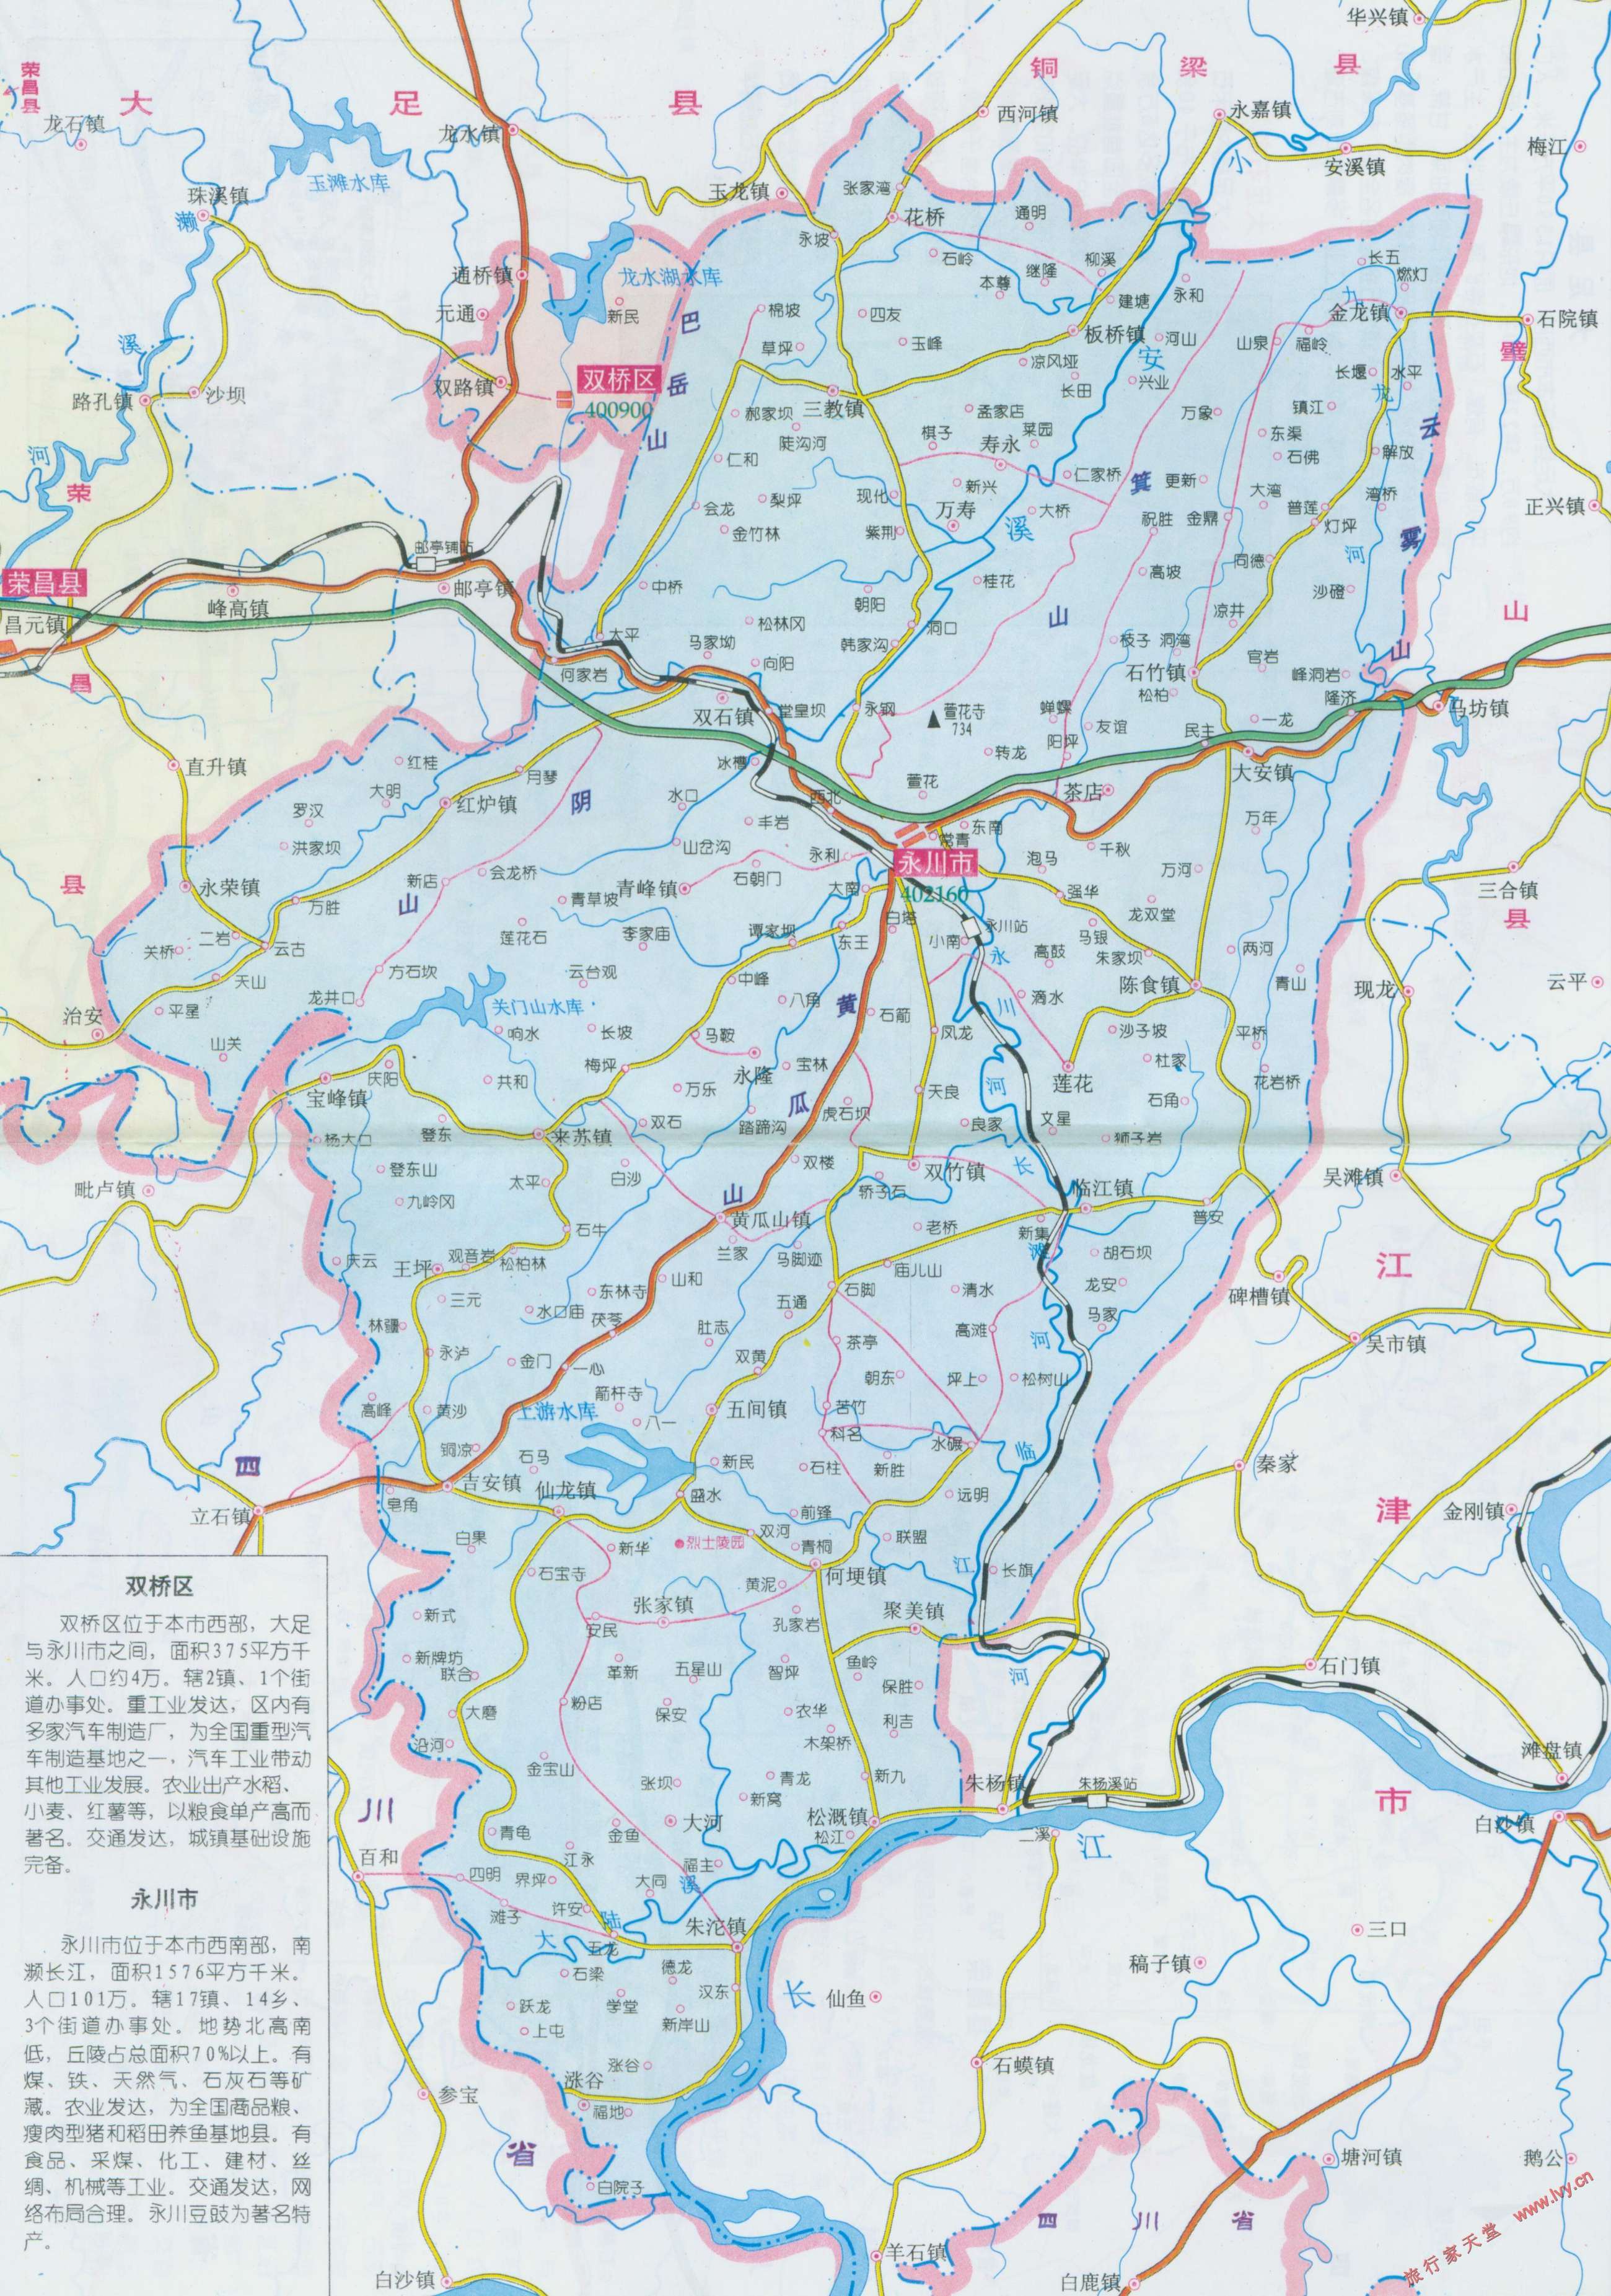 重庆地图_萝卜红_萝卜红色素图片